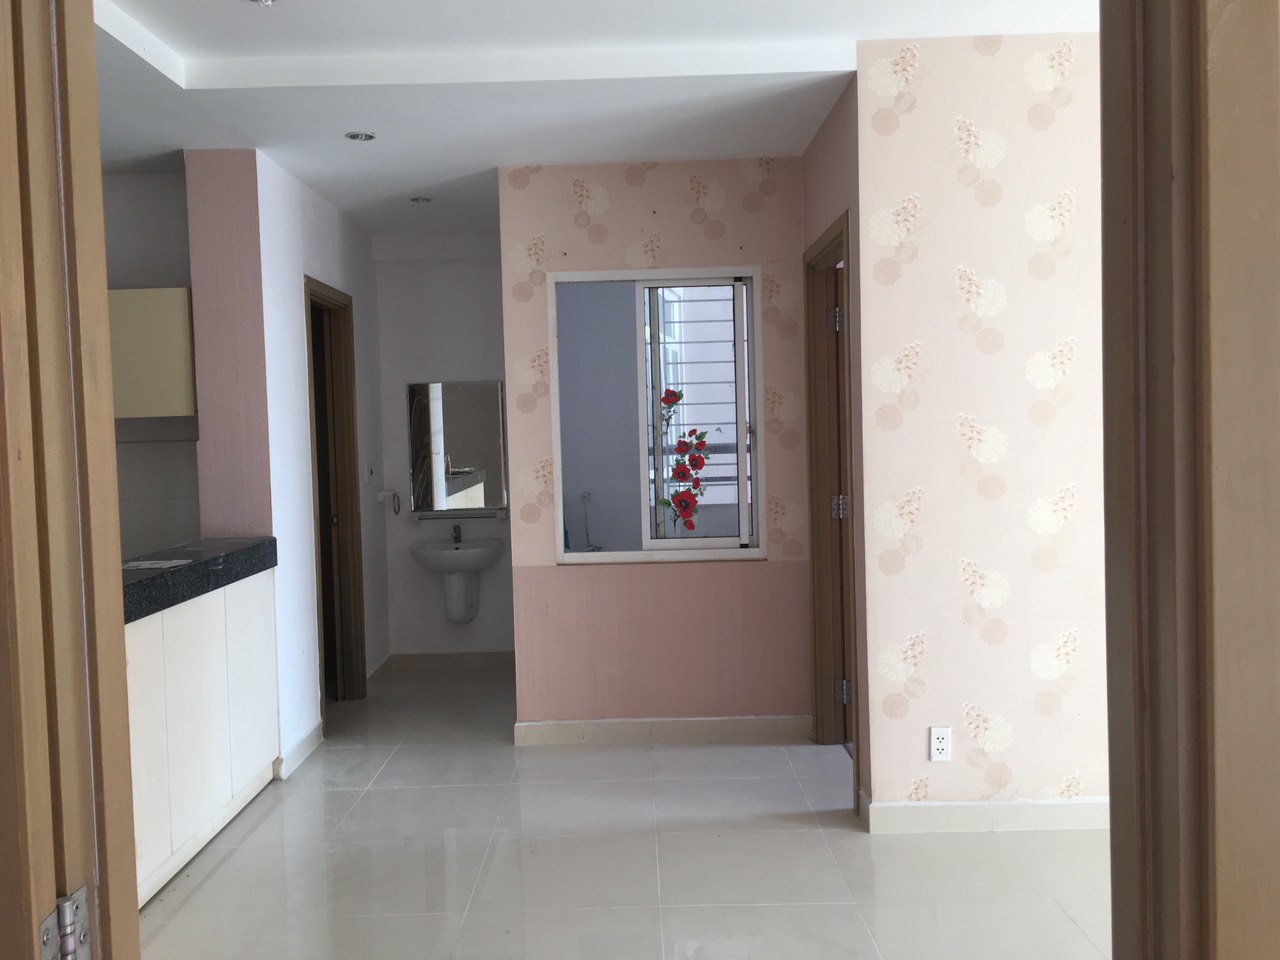 Cho thuê căn hộ Ngọc Lan diện tích 96m2, 2 phòng ngủ, 2 toilet, nội thất đầy đủ giá cho thuê 7tr5/ tháng